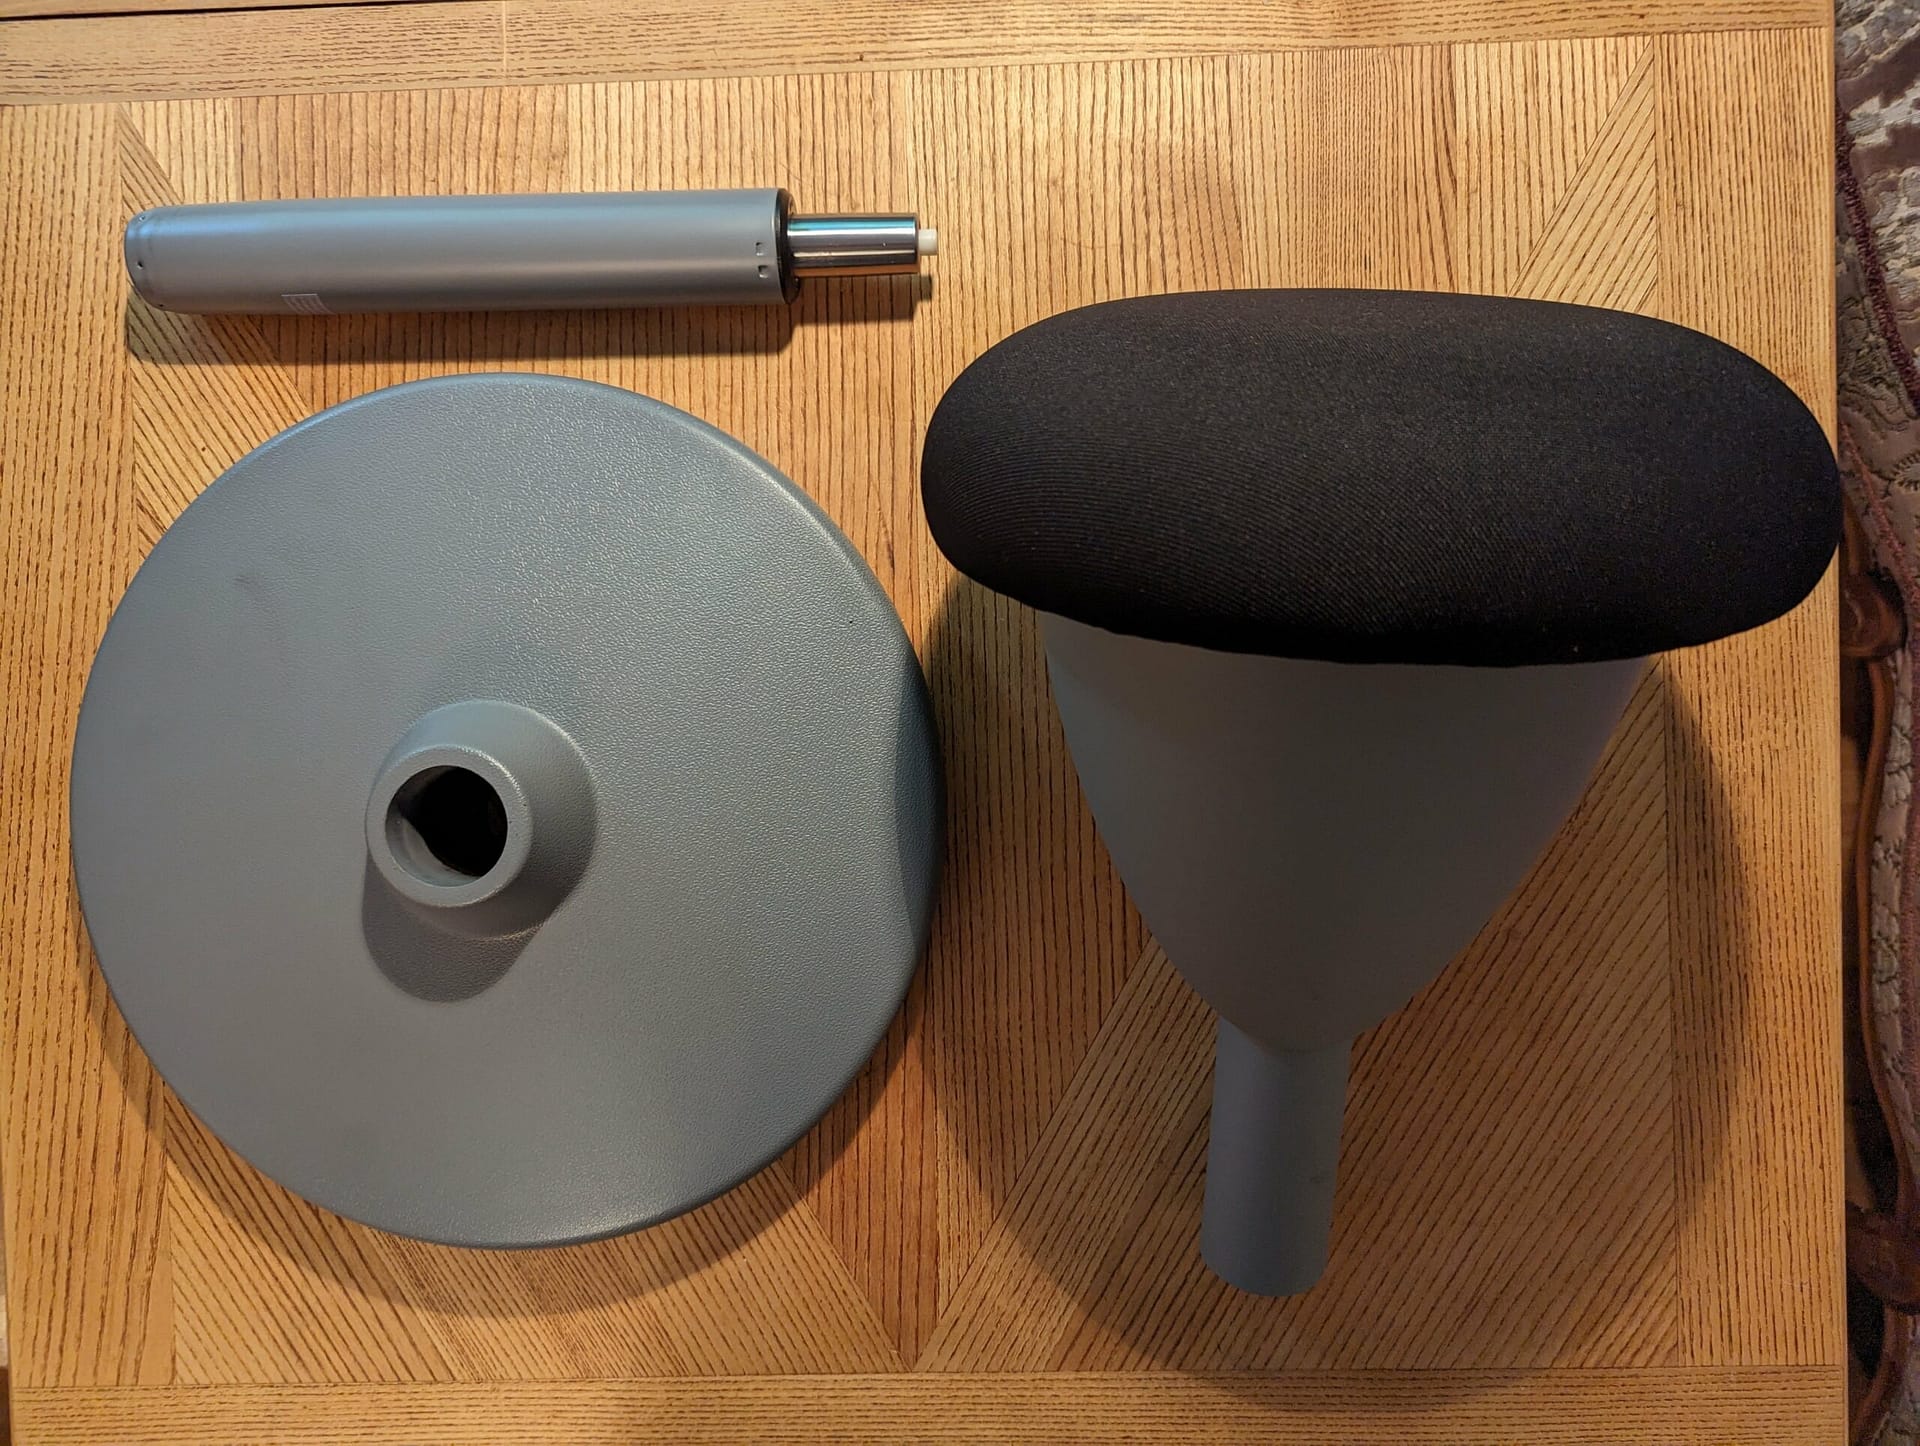 Sitzhocker ergonomisch mit Schwingeffekt im Test von SteinLife